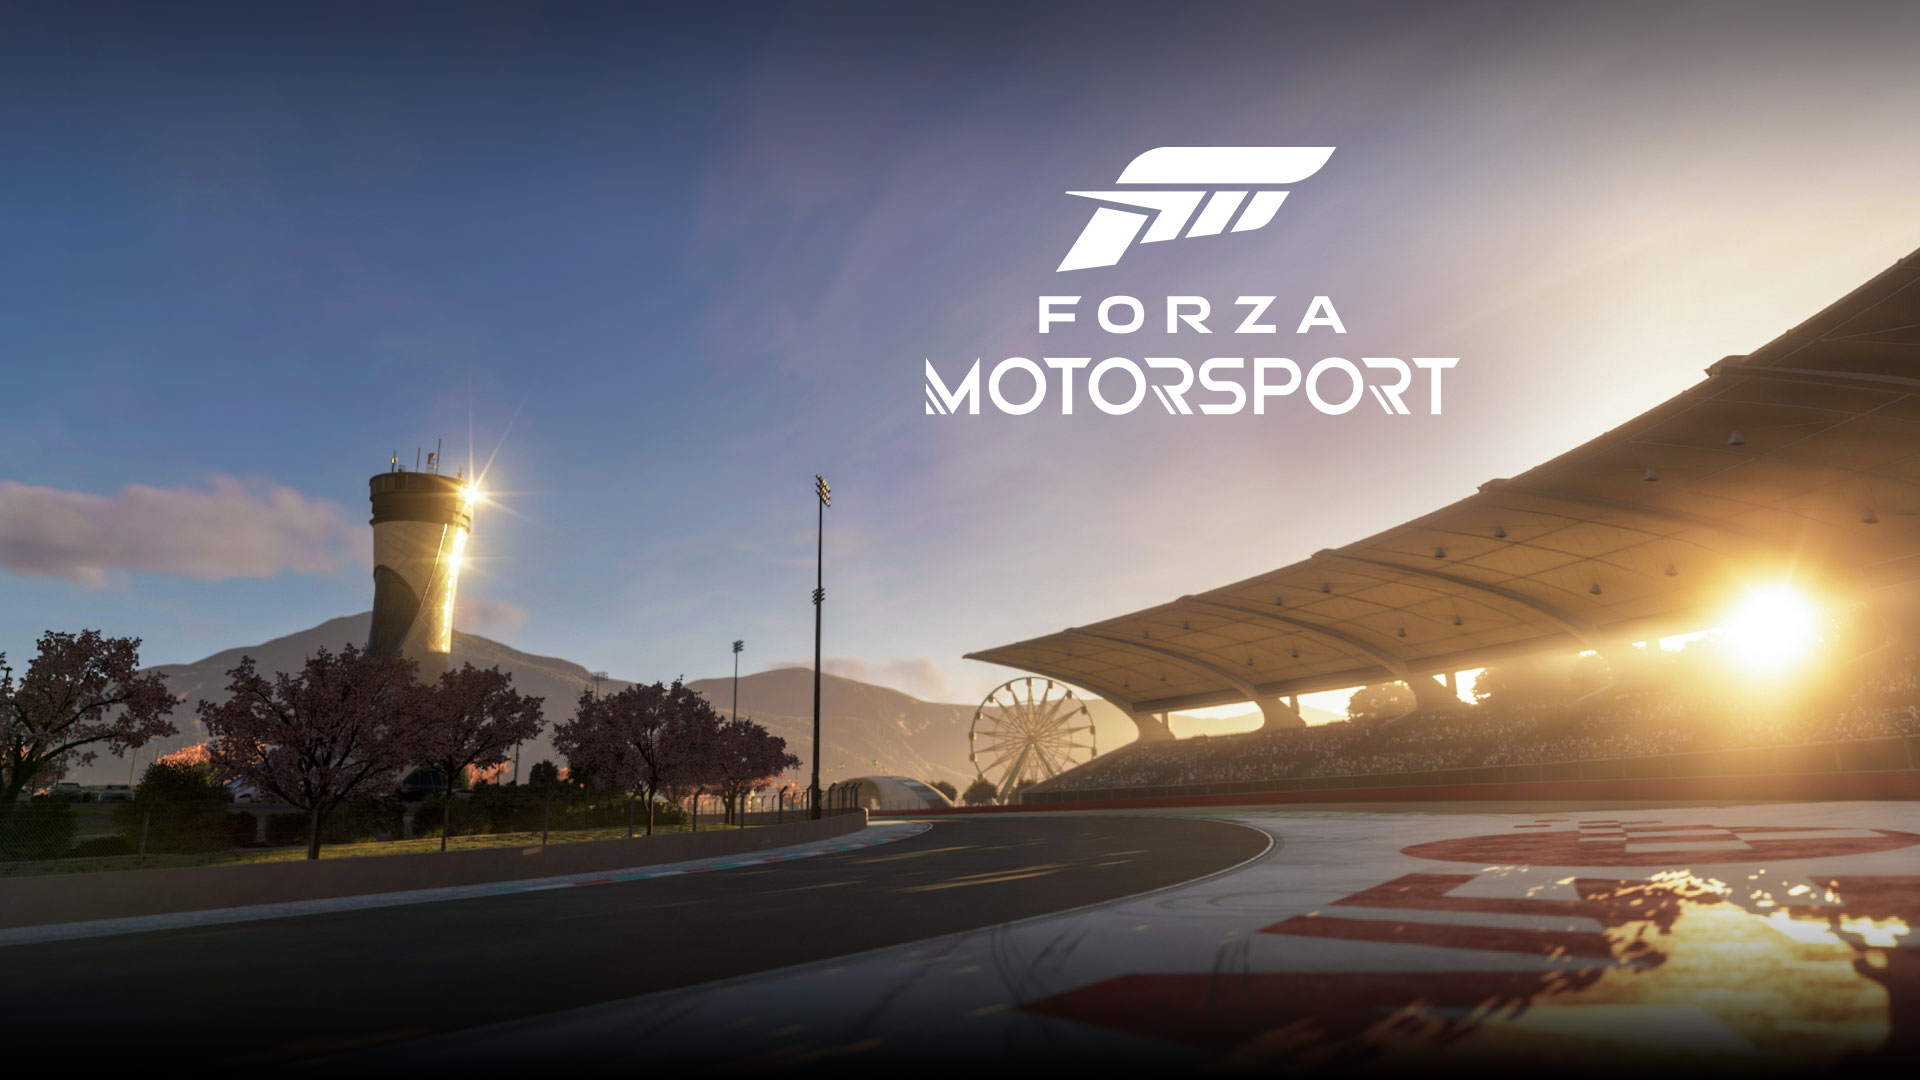 Forza Motorsport, una puesta de sol brilla sobre una pista de carreras.